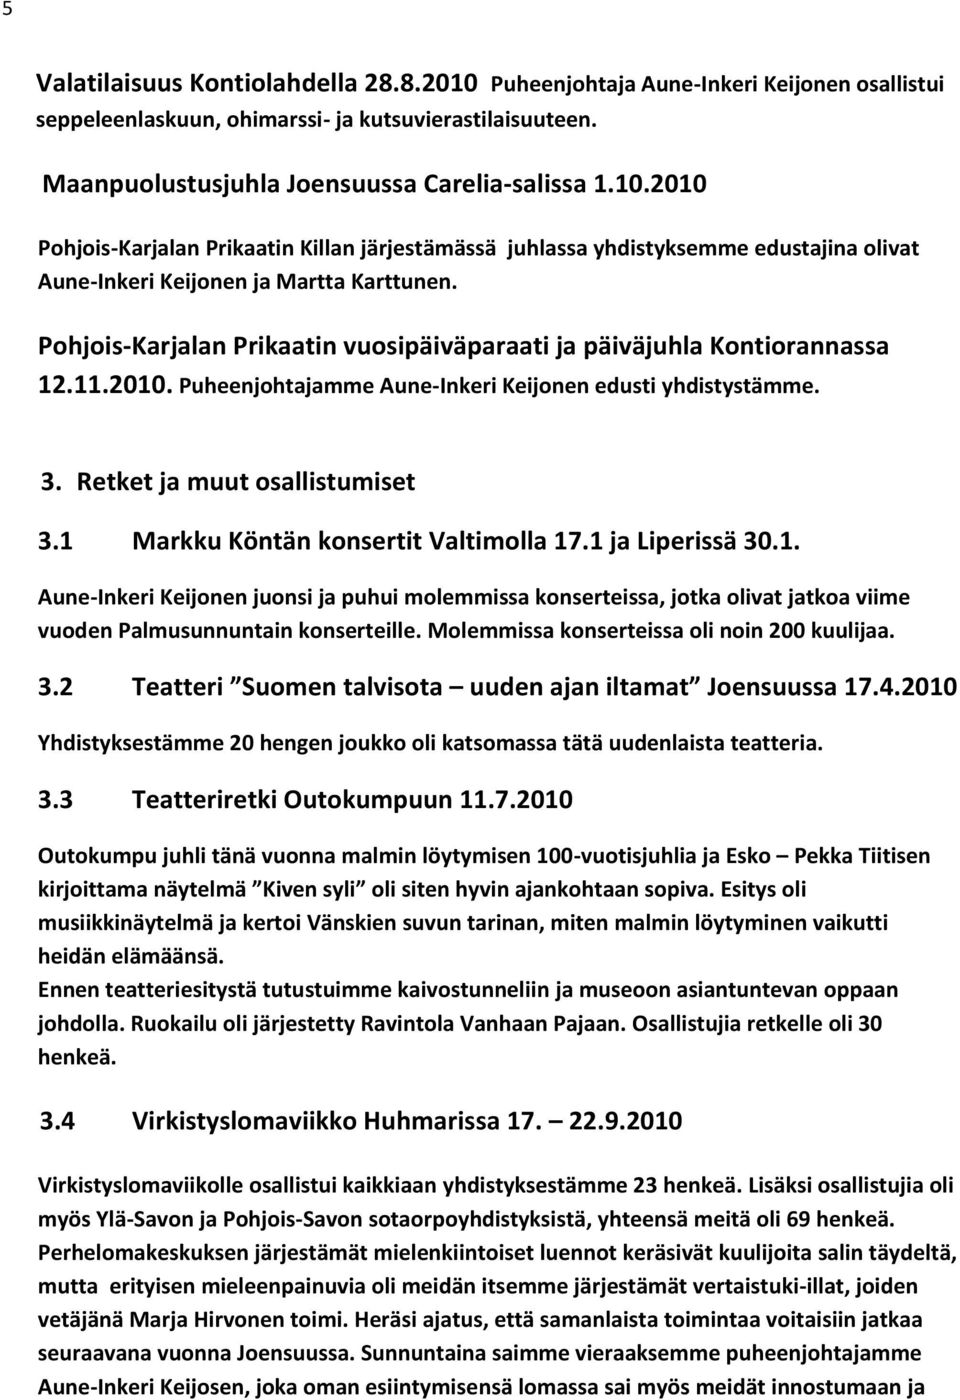 1 Markku Köntän konsertit Valtimolla 17.1 ja Liperissä 30.1. Aune-Inkeri Keijonen juonsi ja puhui molemmissa konserteissa, jotka olivat jatkoa viime vuoden Palmusunnuntain konserteille.